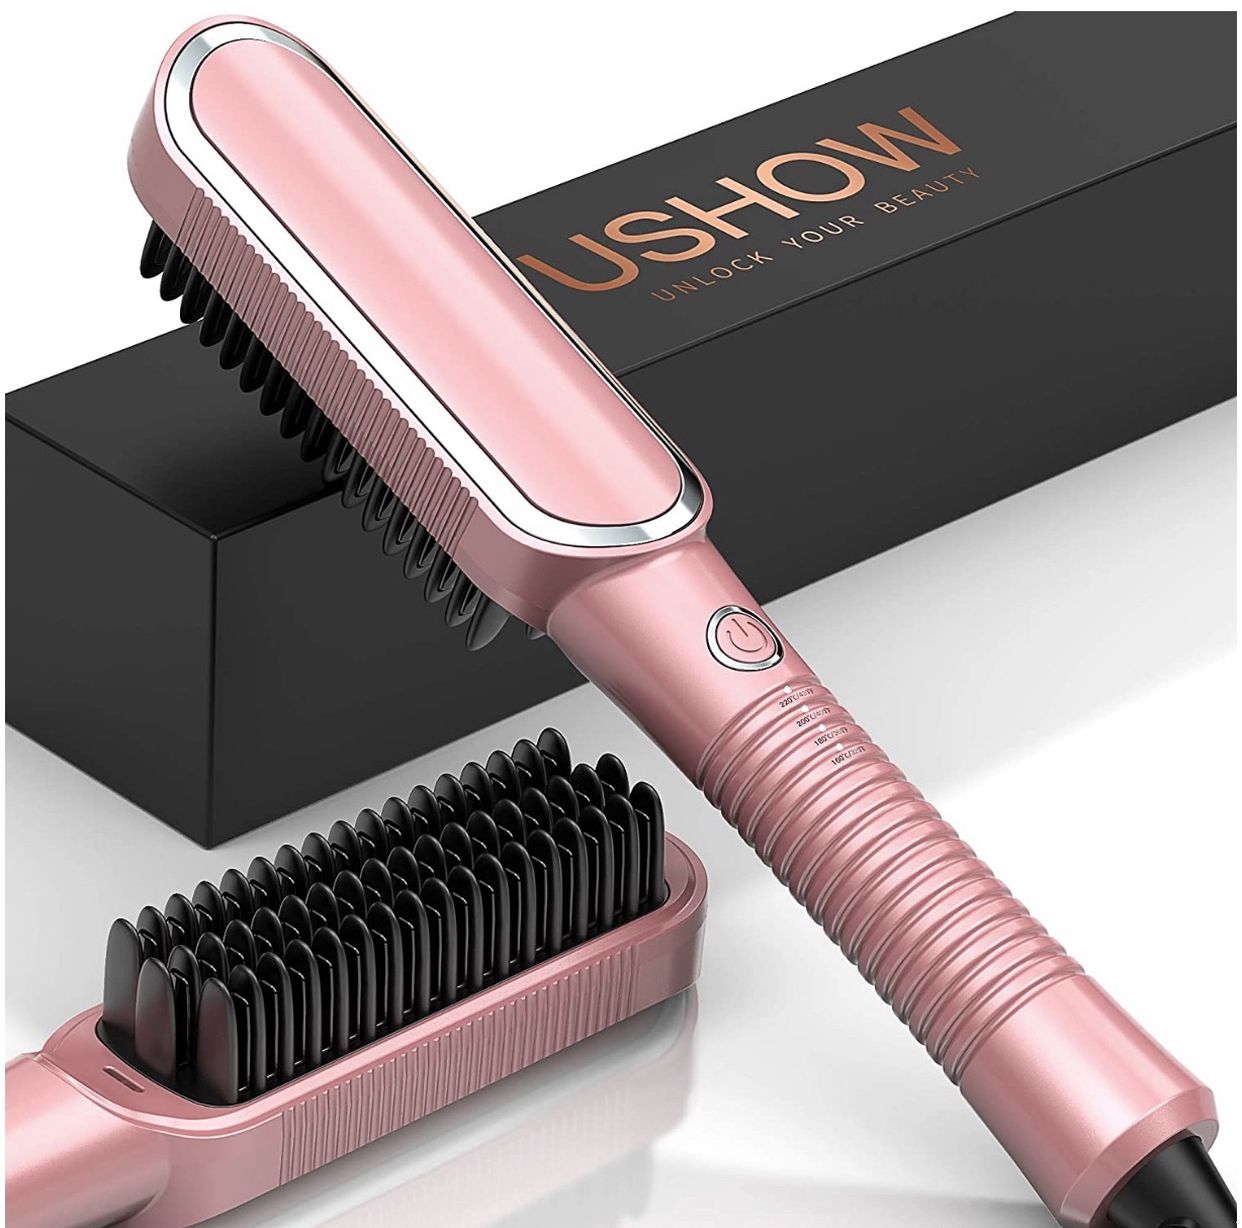 😘 $25 Brand New In Box 2-IN-1 Hot Comb Brush